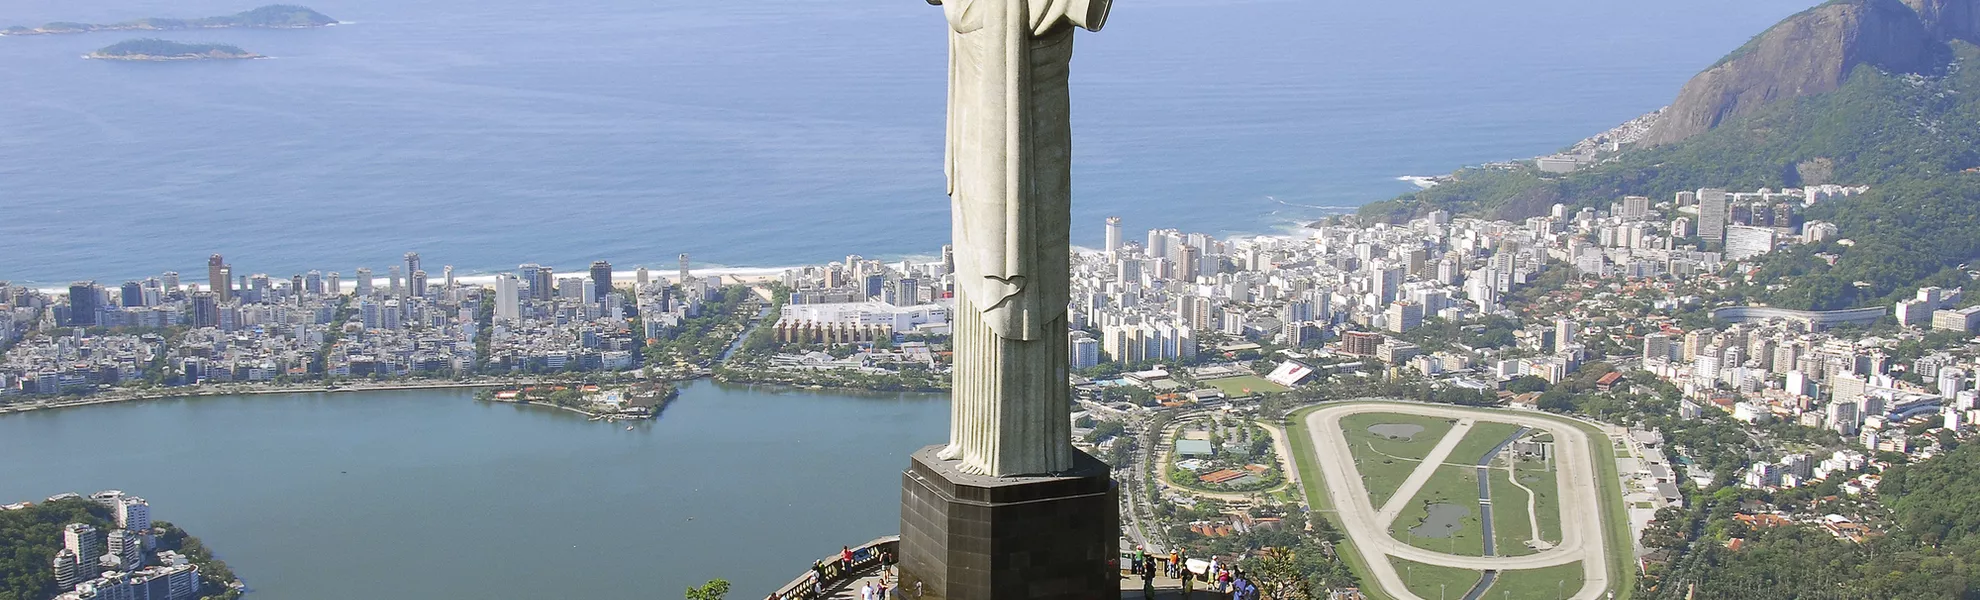 Aerial view of Christ the Redeemer Monument and Rio De Janeiro - © sfmthd - Fotolia